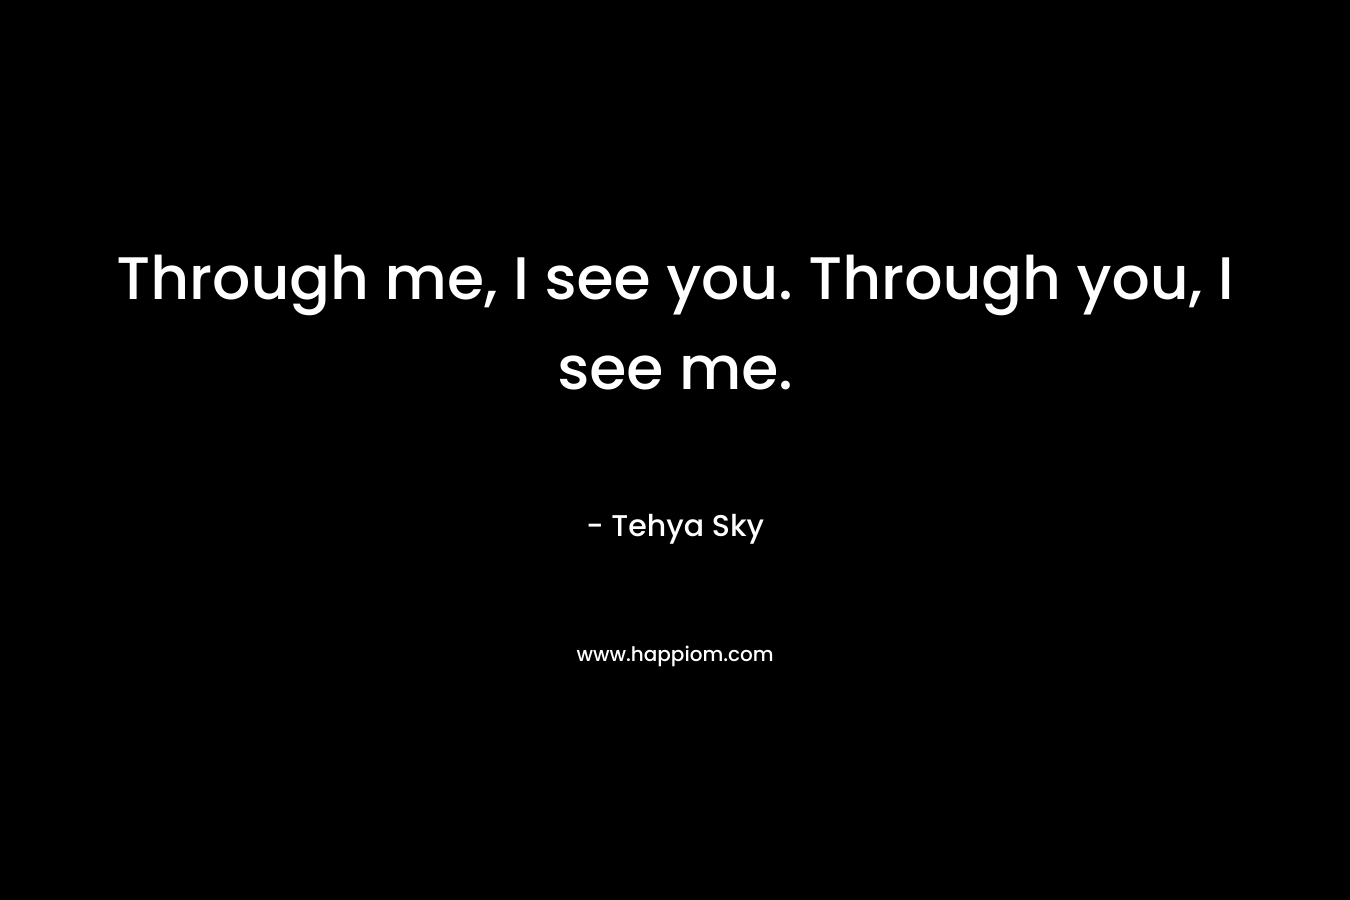 Through me, I see you. Through you, I see me. – Tehya Sky